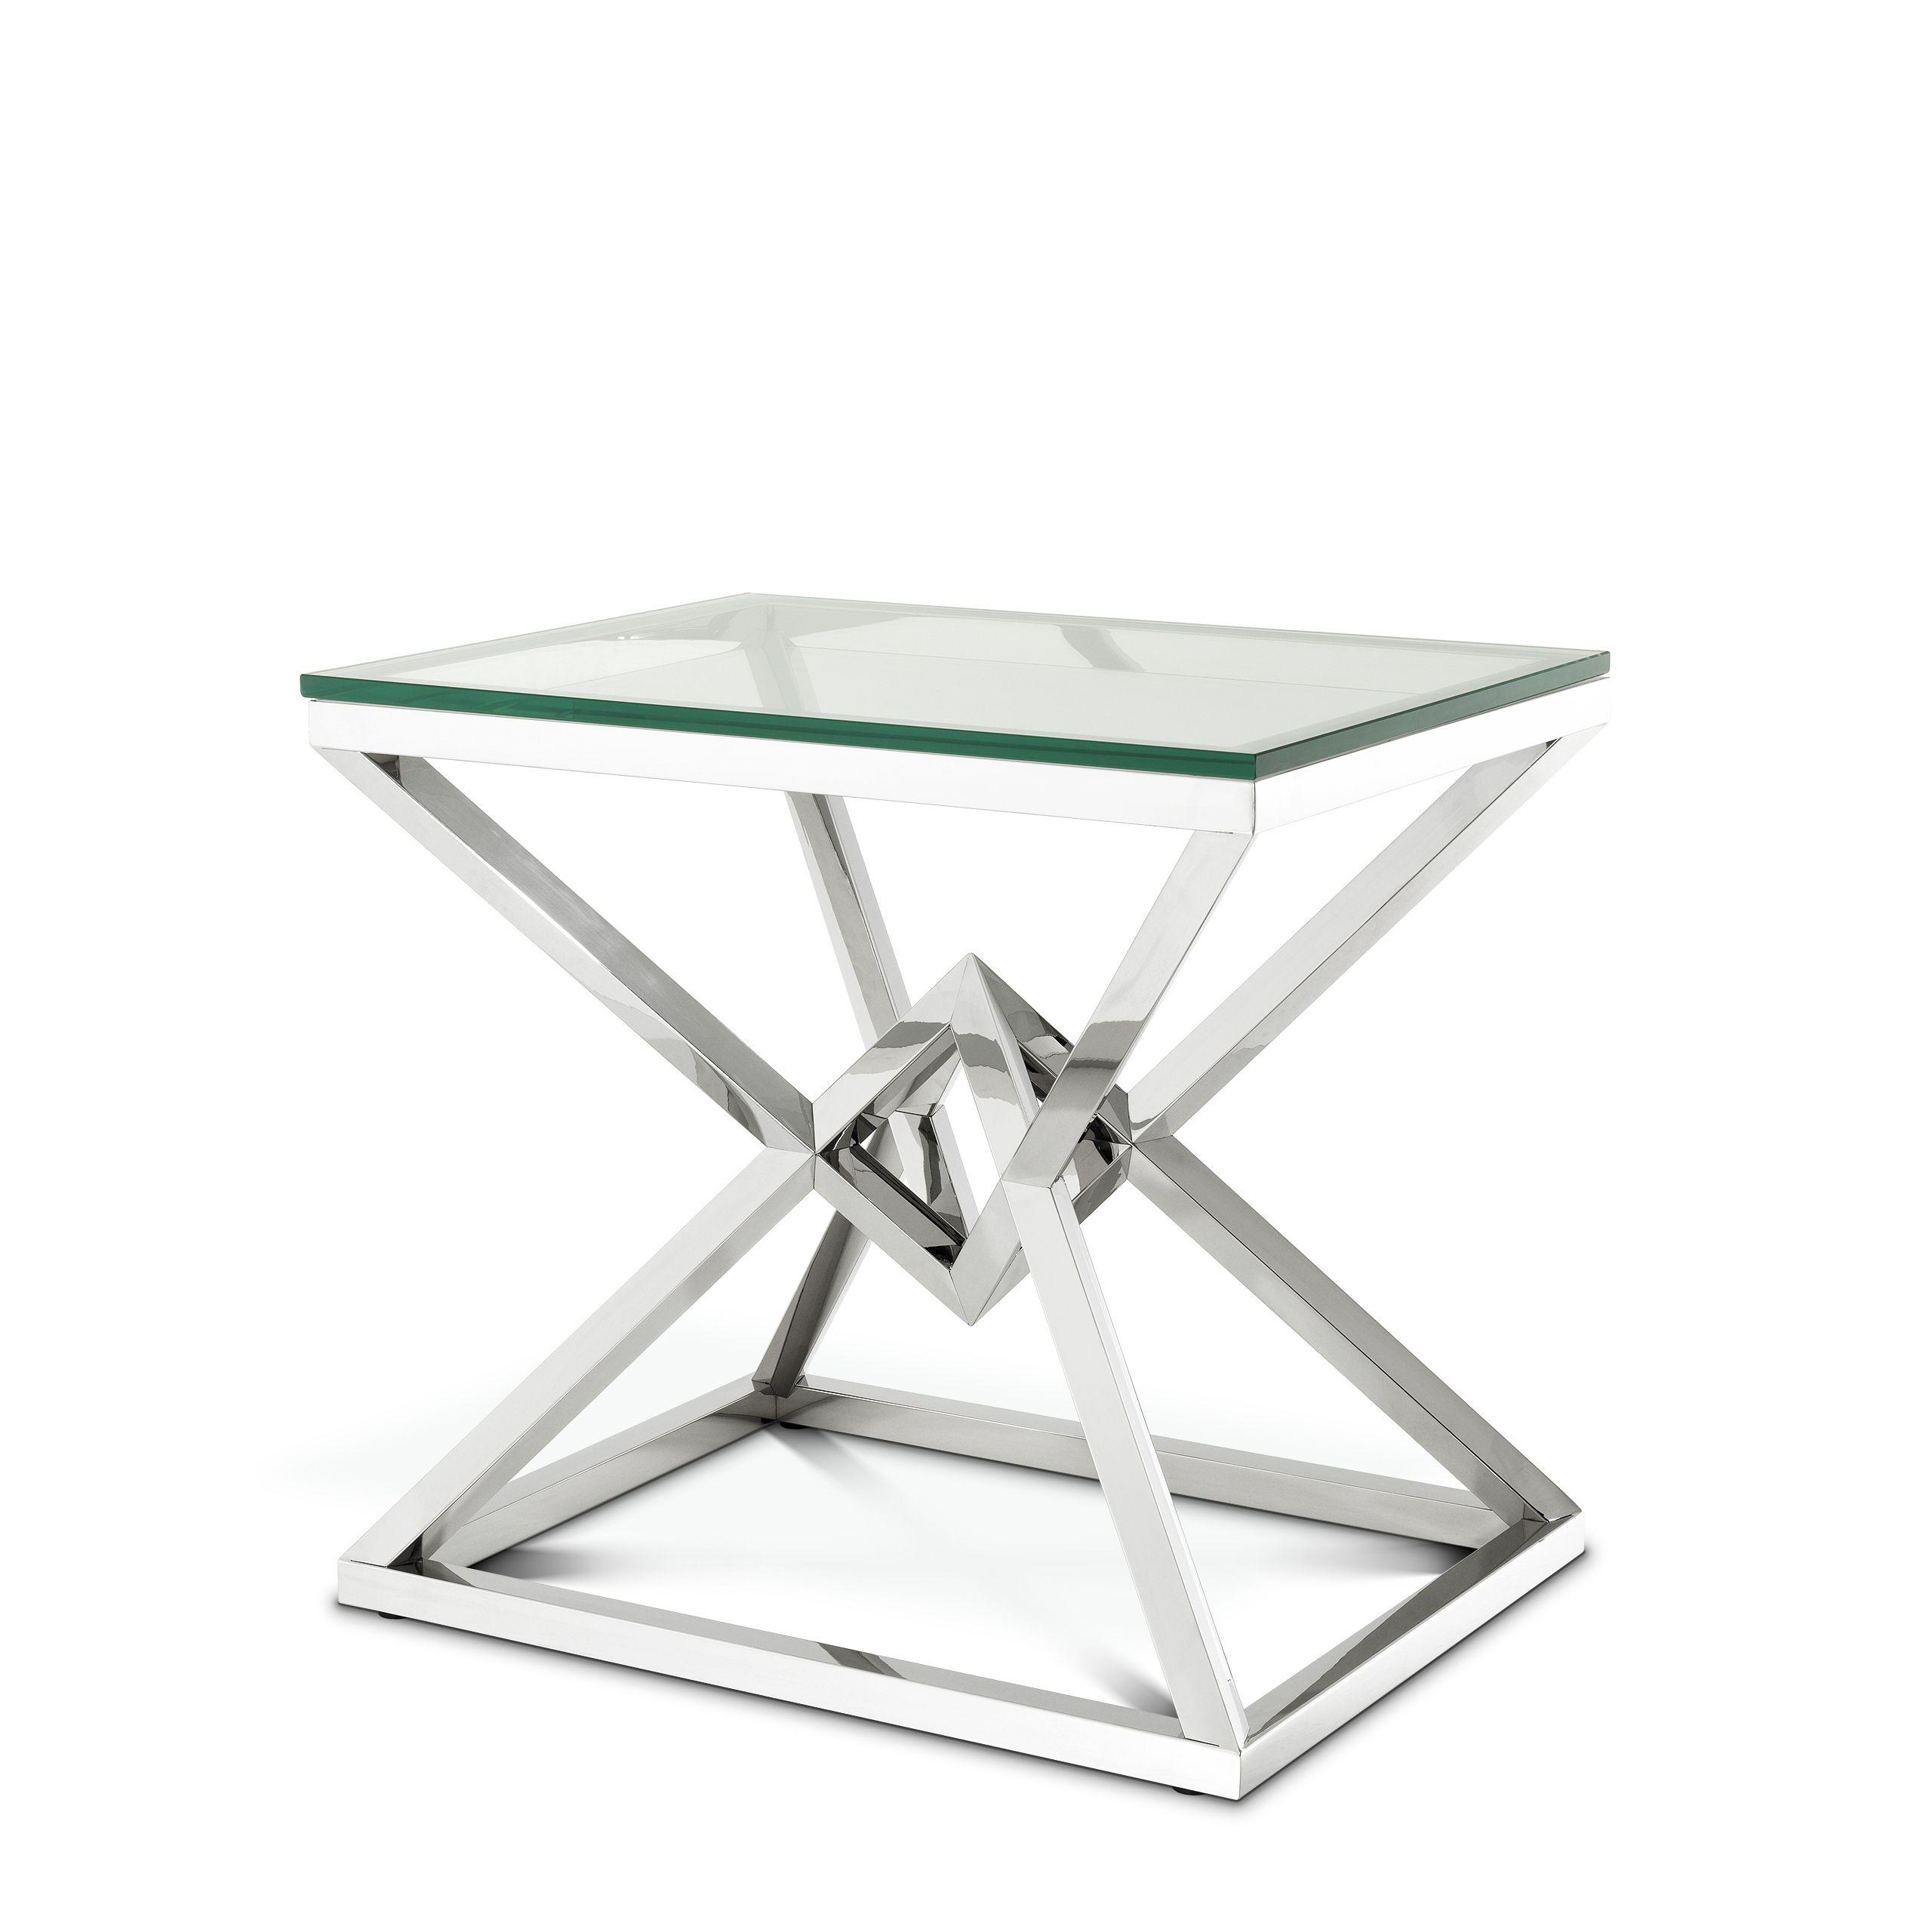 Купить Приставной столик Side Table Connor в интернет-магазине roooms.ru